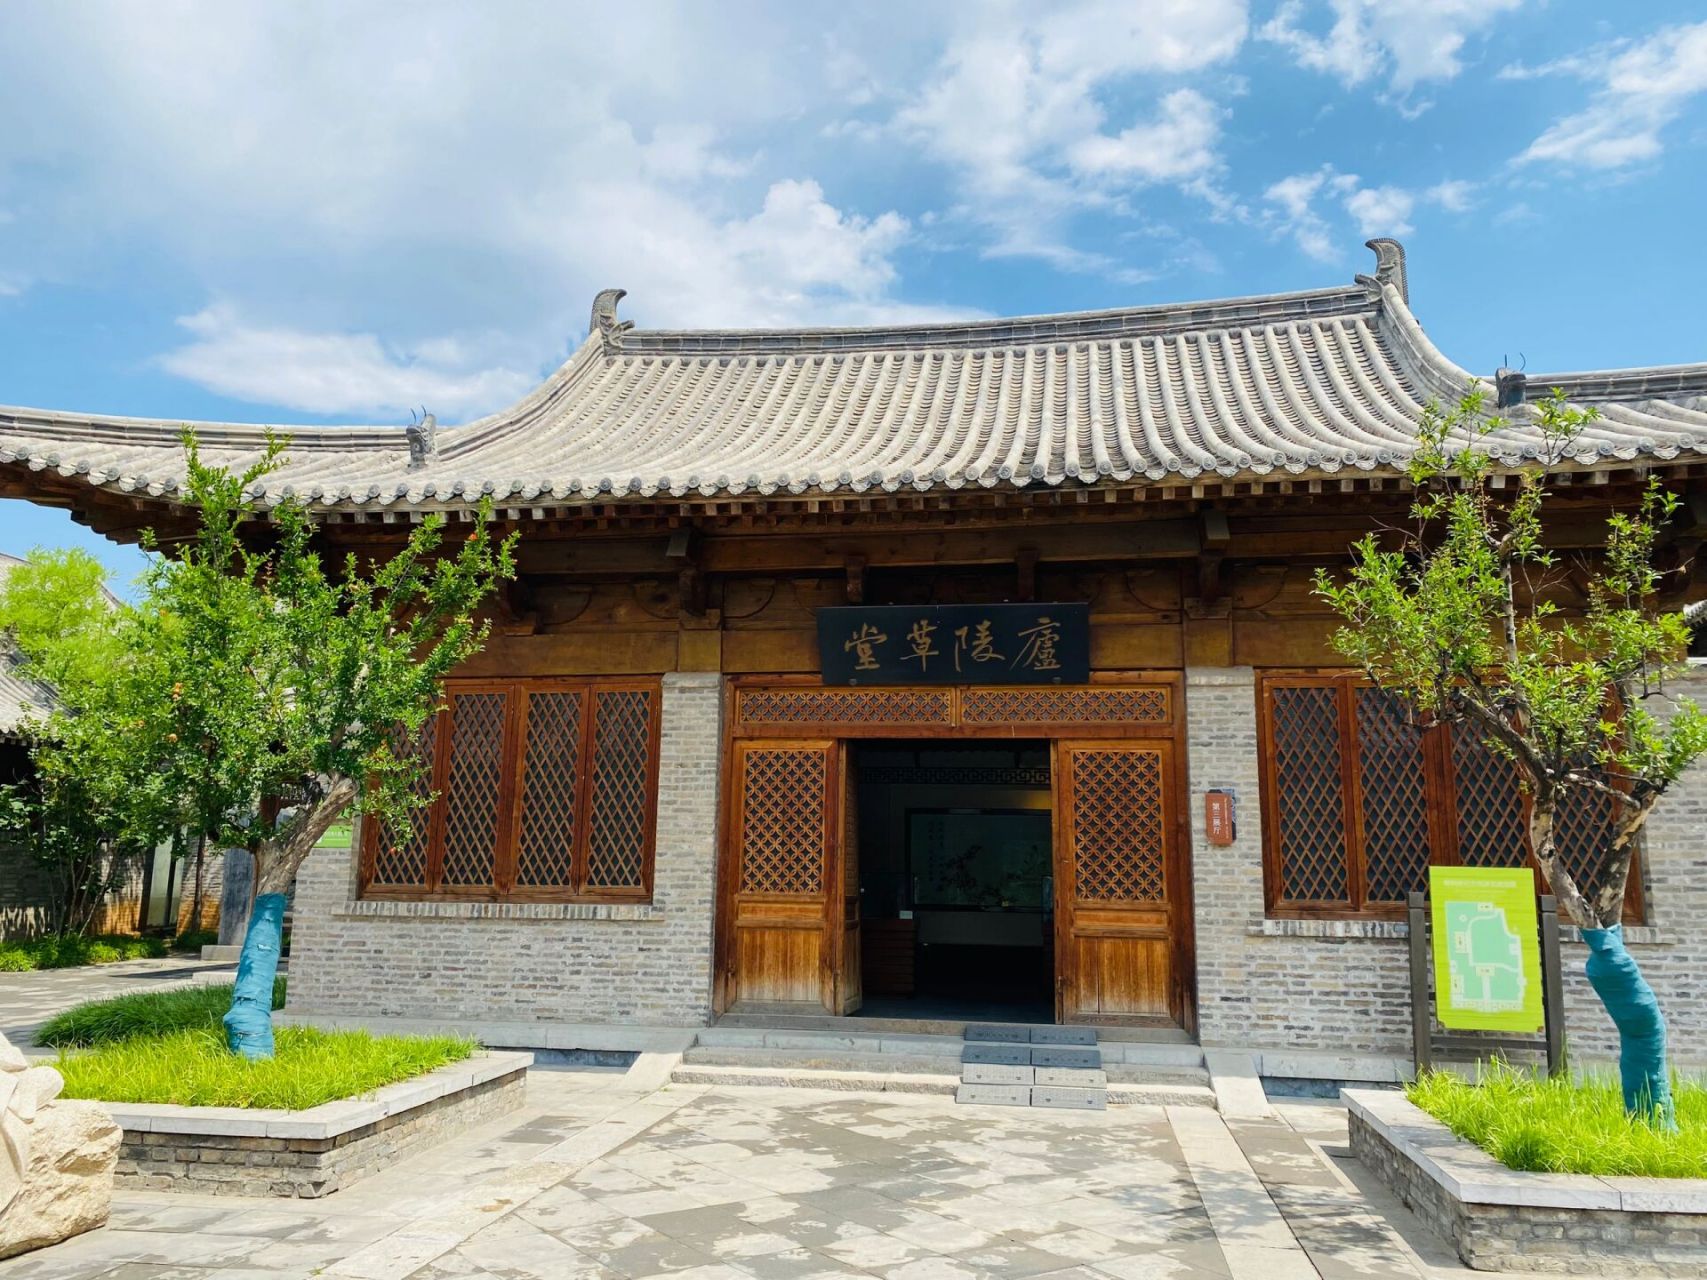 青州古城欧阳修纪念馆 欧阳修纪念馆位于青州古城阜财门不远处,60周岁